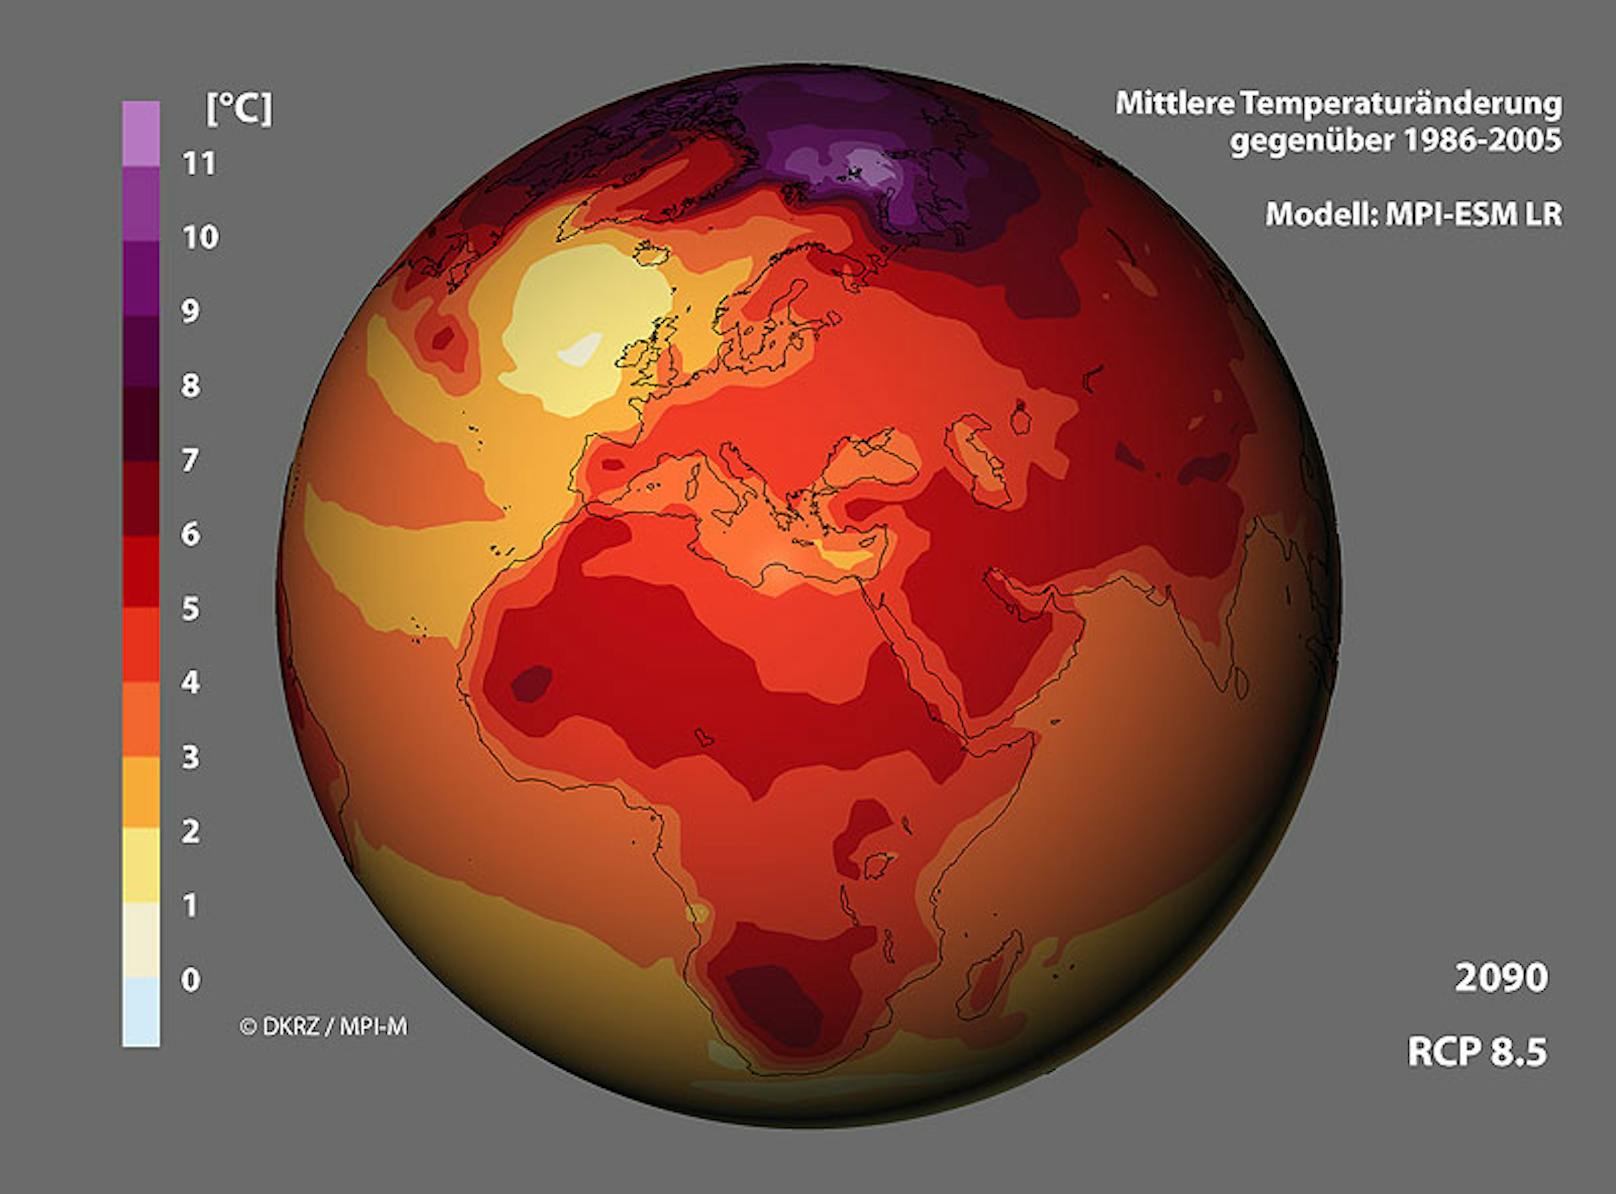 Änderung der geographischen Verteilung der 2m-Temperatur bis 2100 nach dem RCP-Szenarien 8.5 im Vergleich zum Mittel 1986-2005